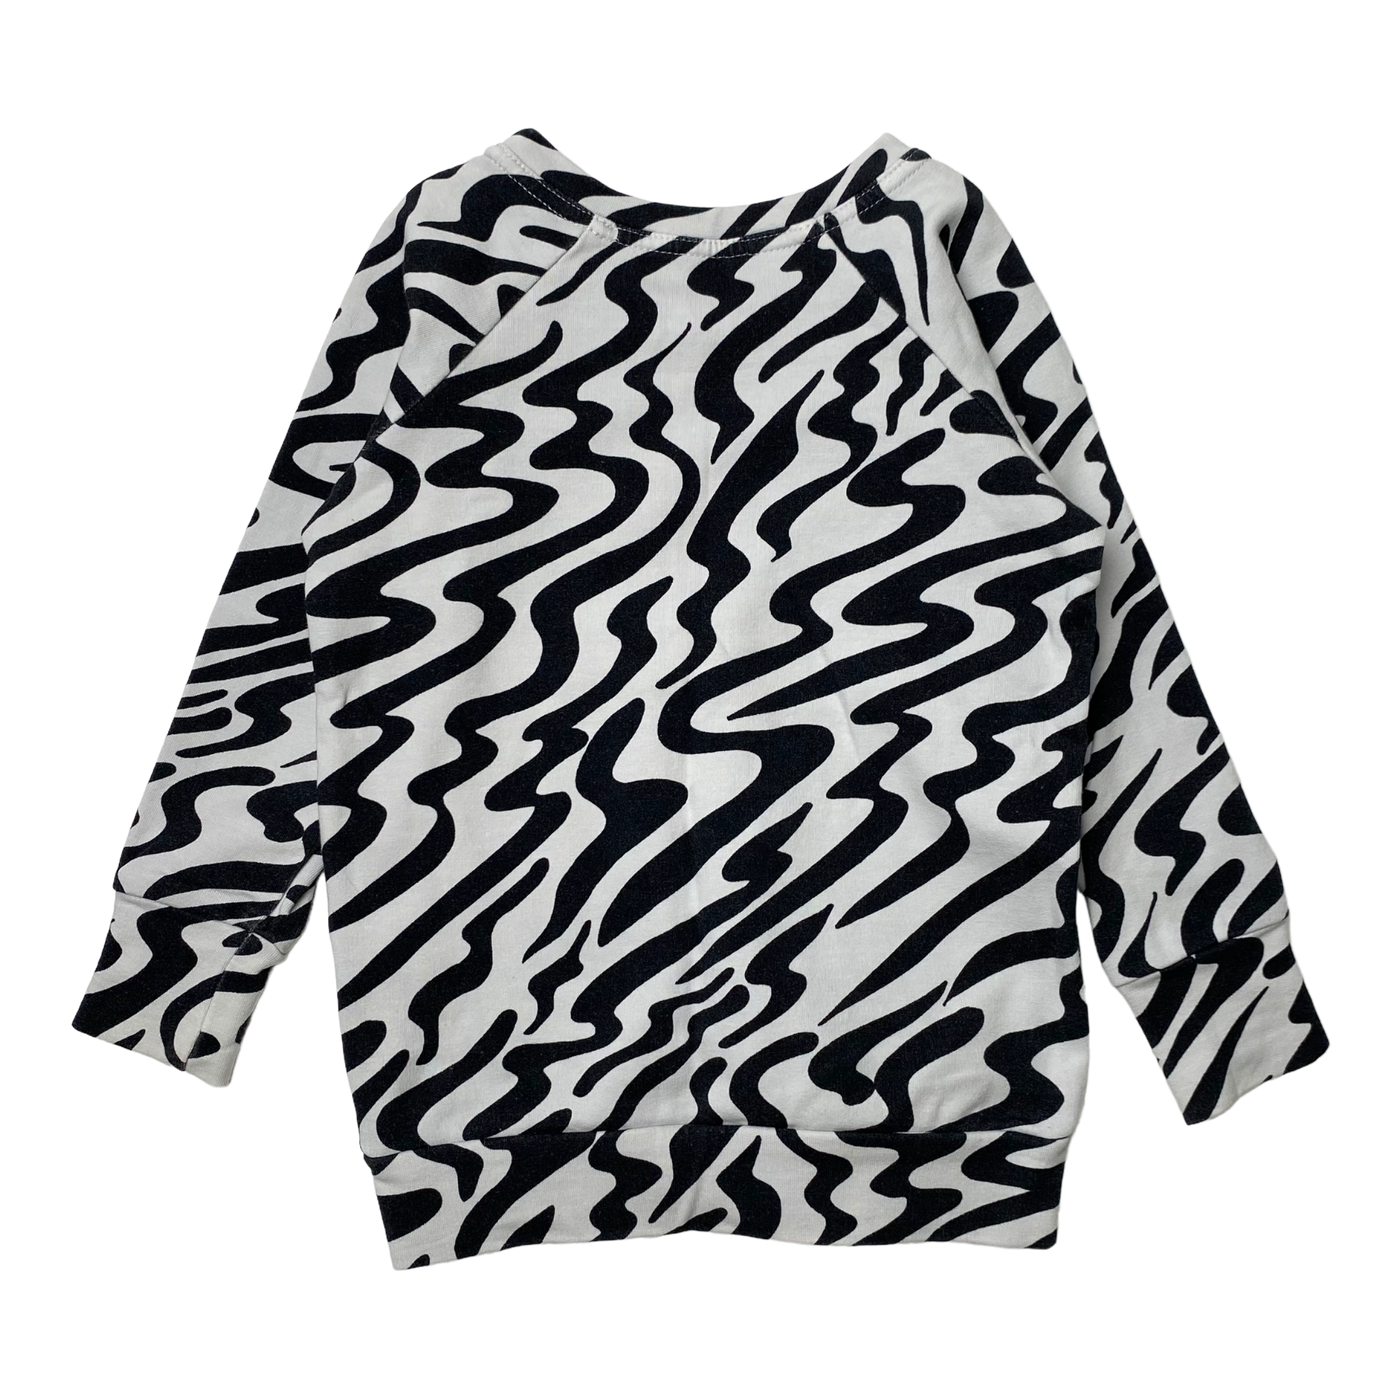 Vimma shirt, zebra | 90cm